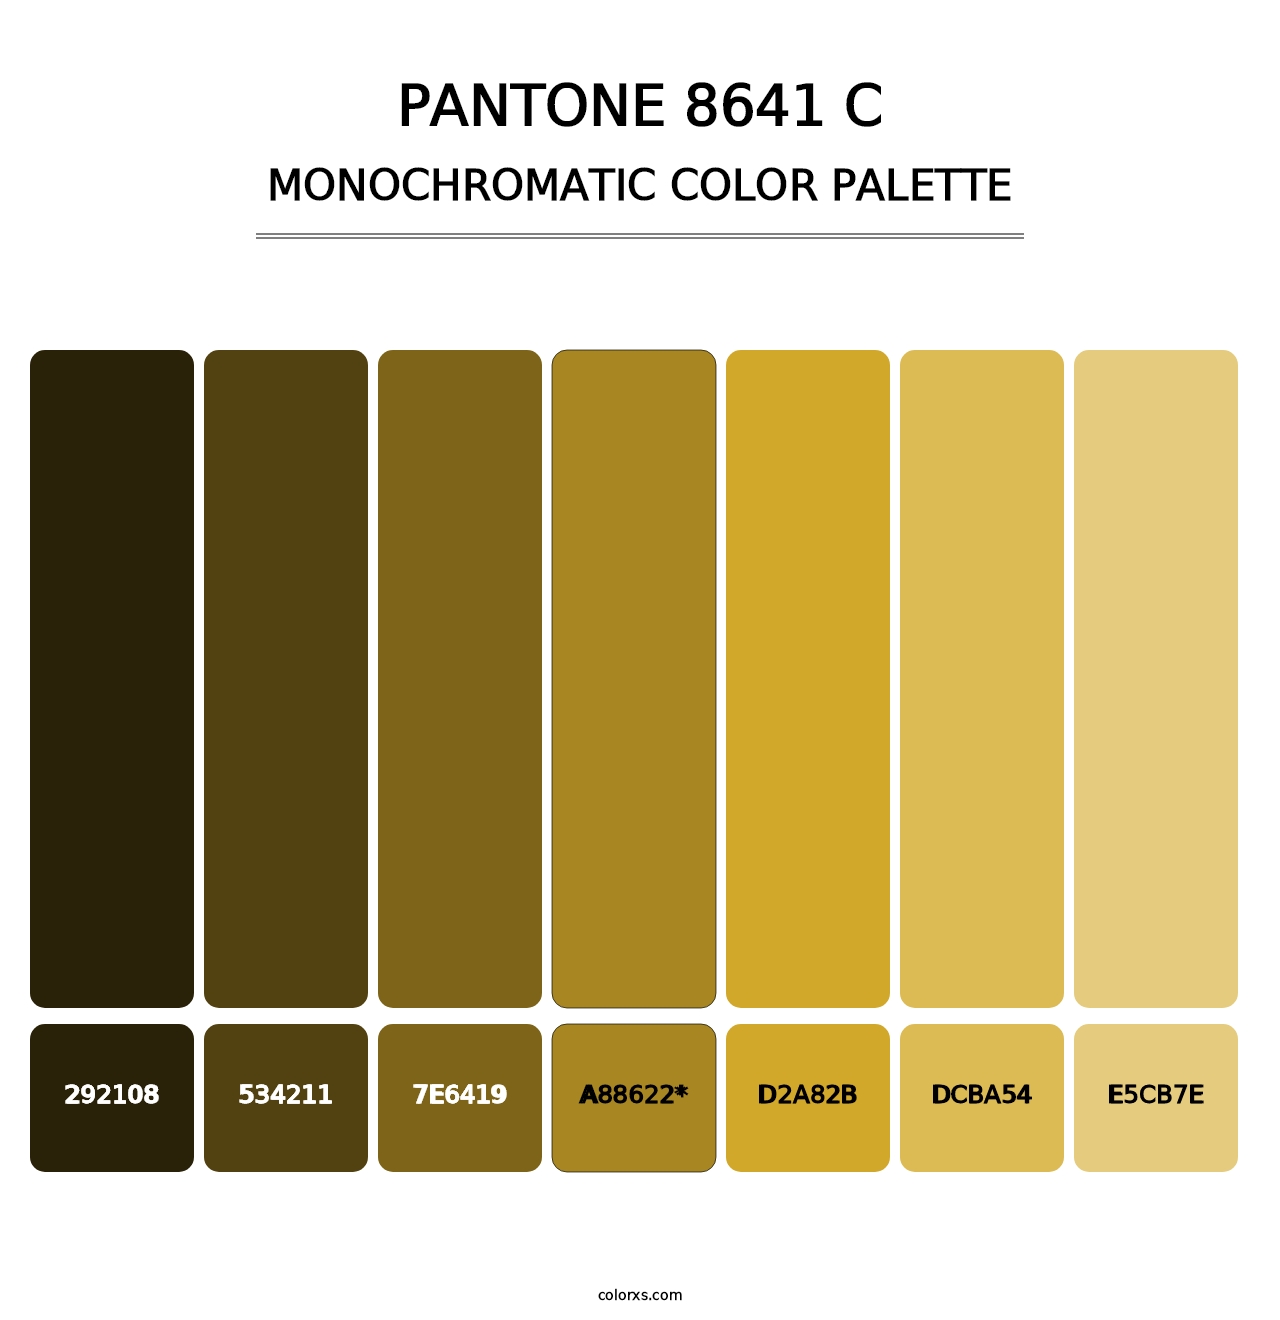 PANTONE 8641 C - Monochromatic Color Palette